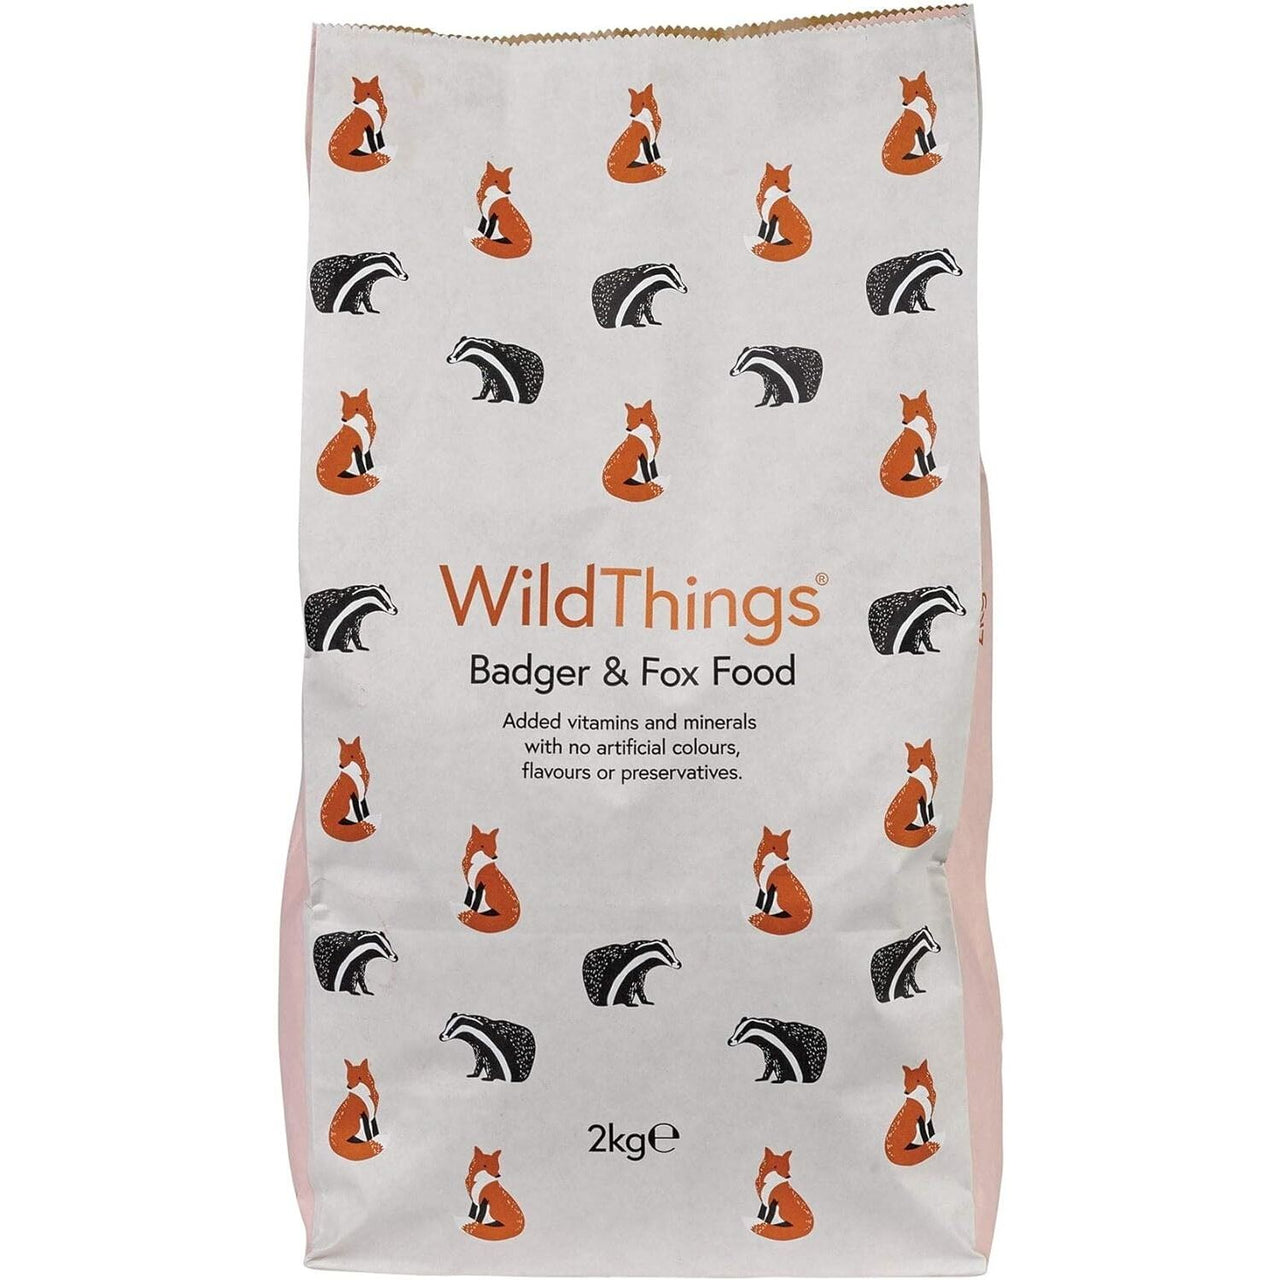 Wildthings - Badger & Fox Food, 2kg Pack